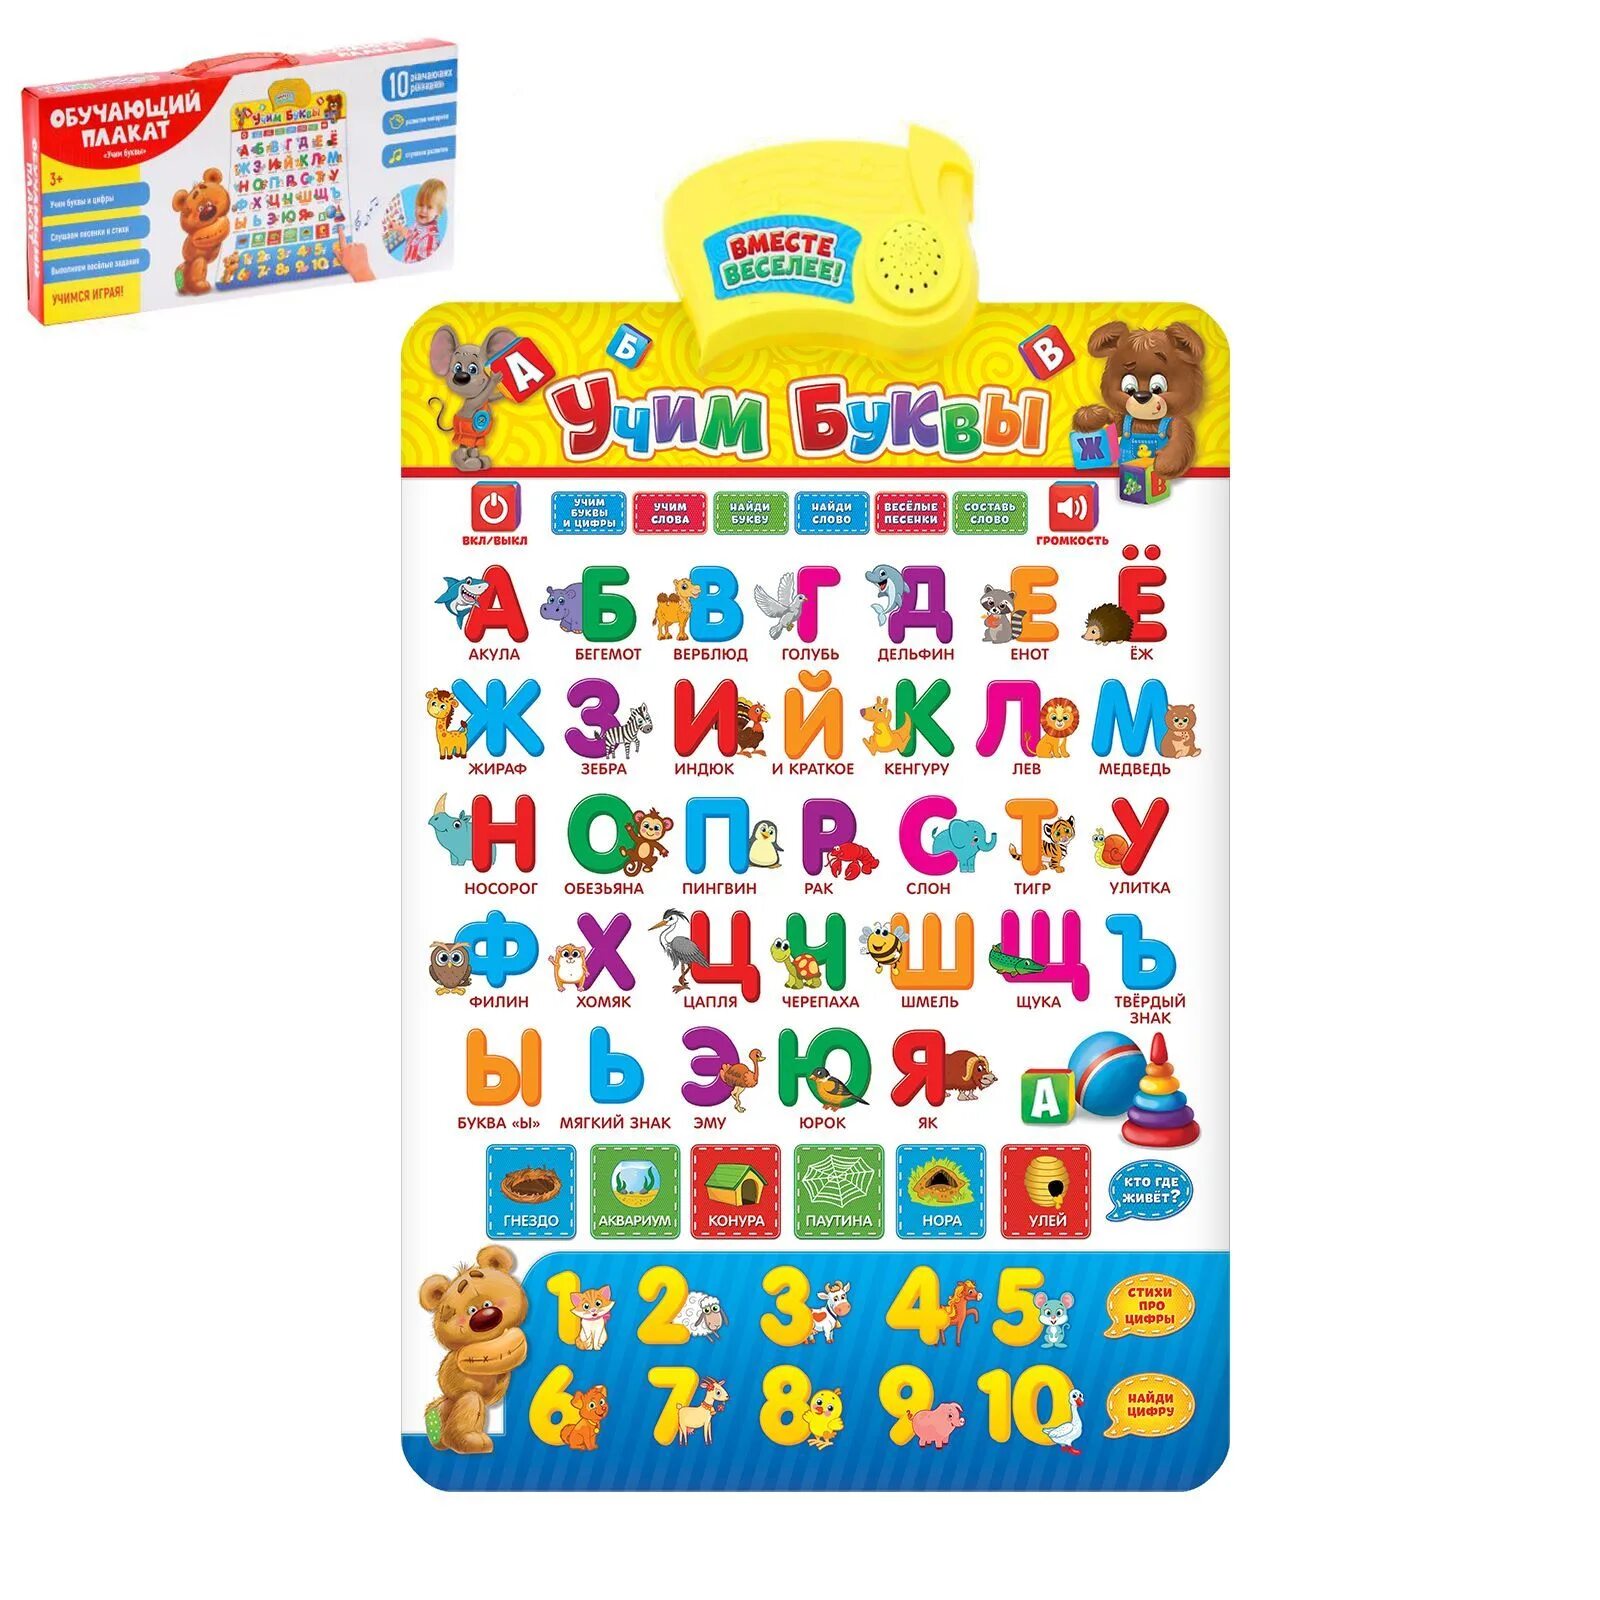 Давай учиться буквы. Обучающая игрушка ZABIAKA "буквы и цифры", звук, свет. Обучающий плакат Азбука. Электронный плакат Азбука. Обучающий плакат Азбука для детей.